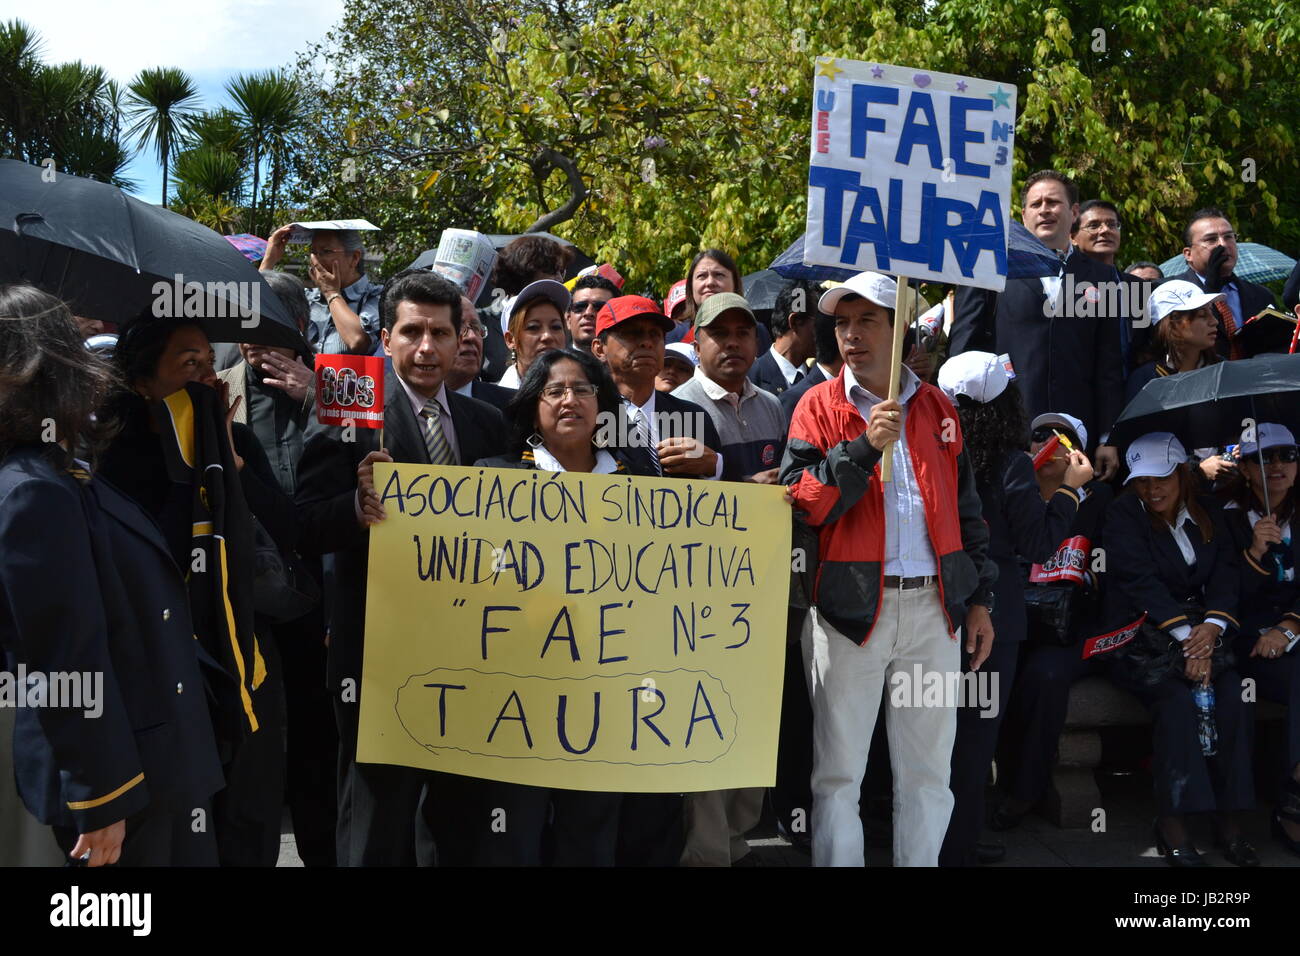 QUITO, ECUADOR - Maggio 07, 2017: un popolo non identificato protestare per ottenere un lavoro dignitoso con denominazione e non contratto dal governo ecuadoriano. Foto Stock